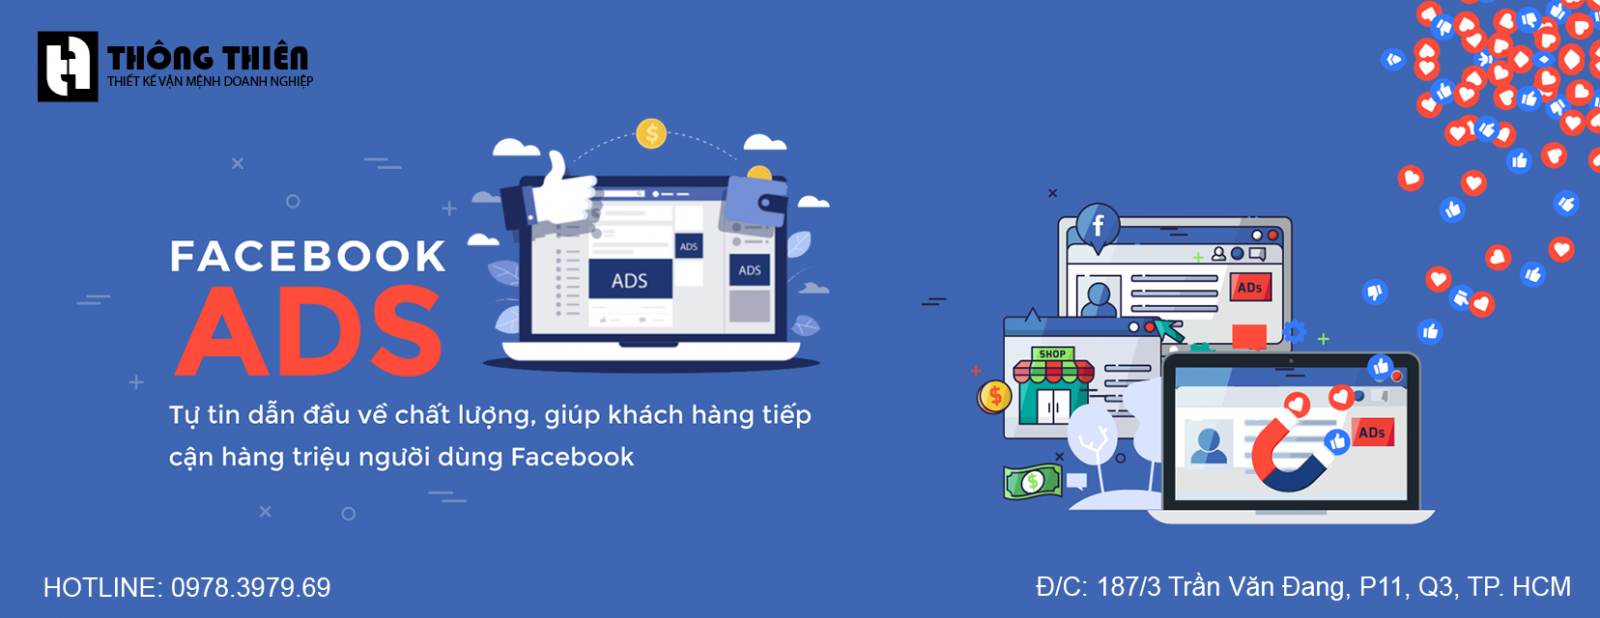 Bảng giá dịch vụ chạy quảng cáo trên Facebook uy tín giá rẻ tại tphcm